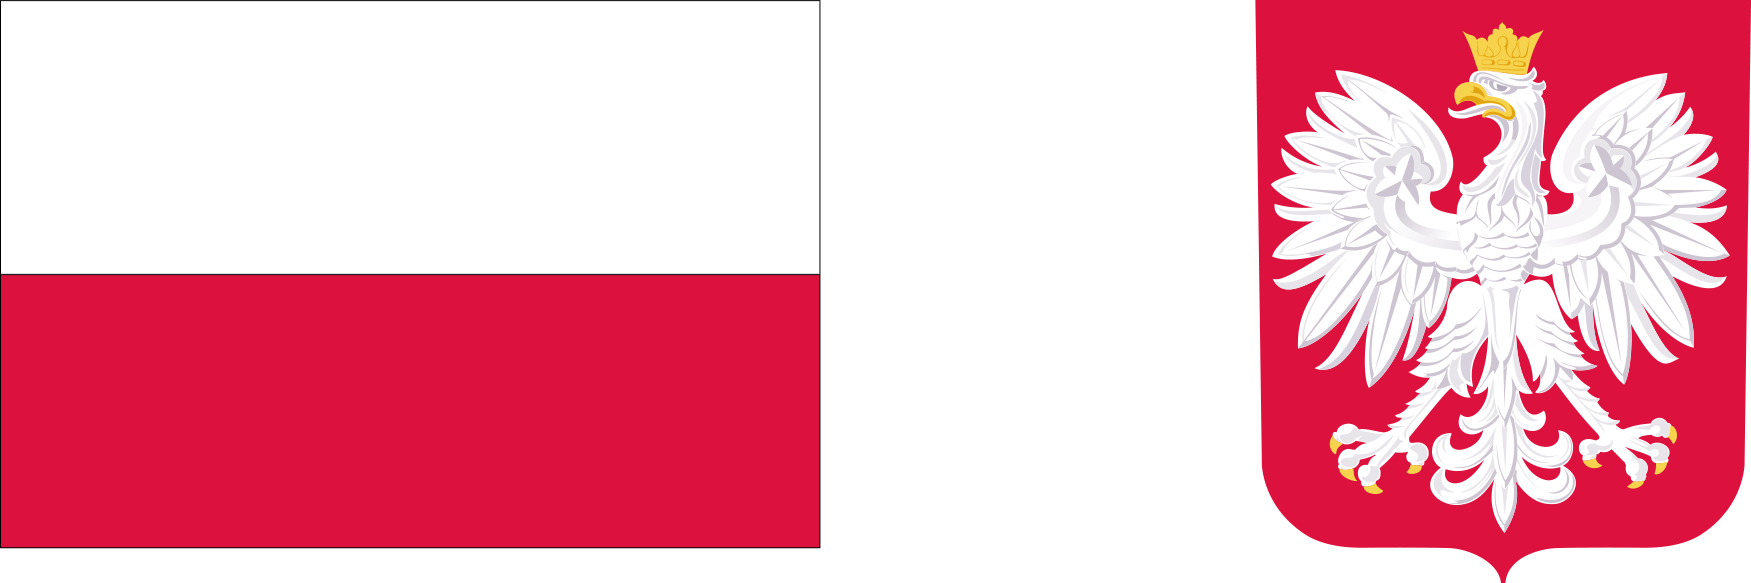 Grafika przedstawia po lewej stronie flagę Polski, zaś po prawej stronie znajduje się godło Polski.